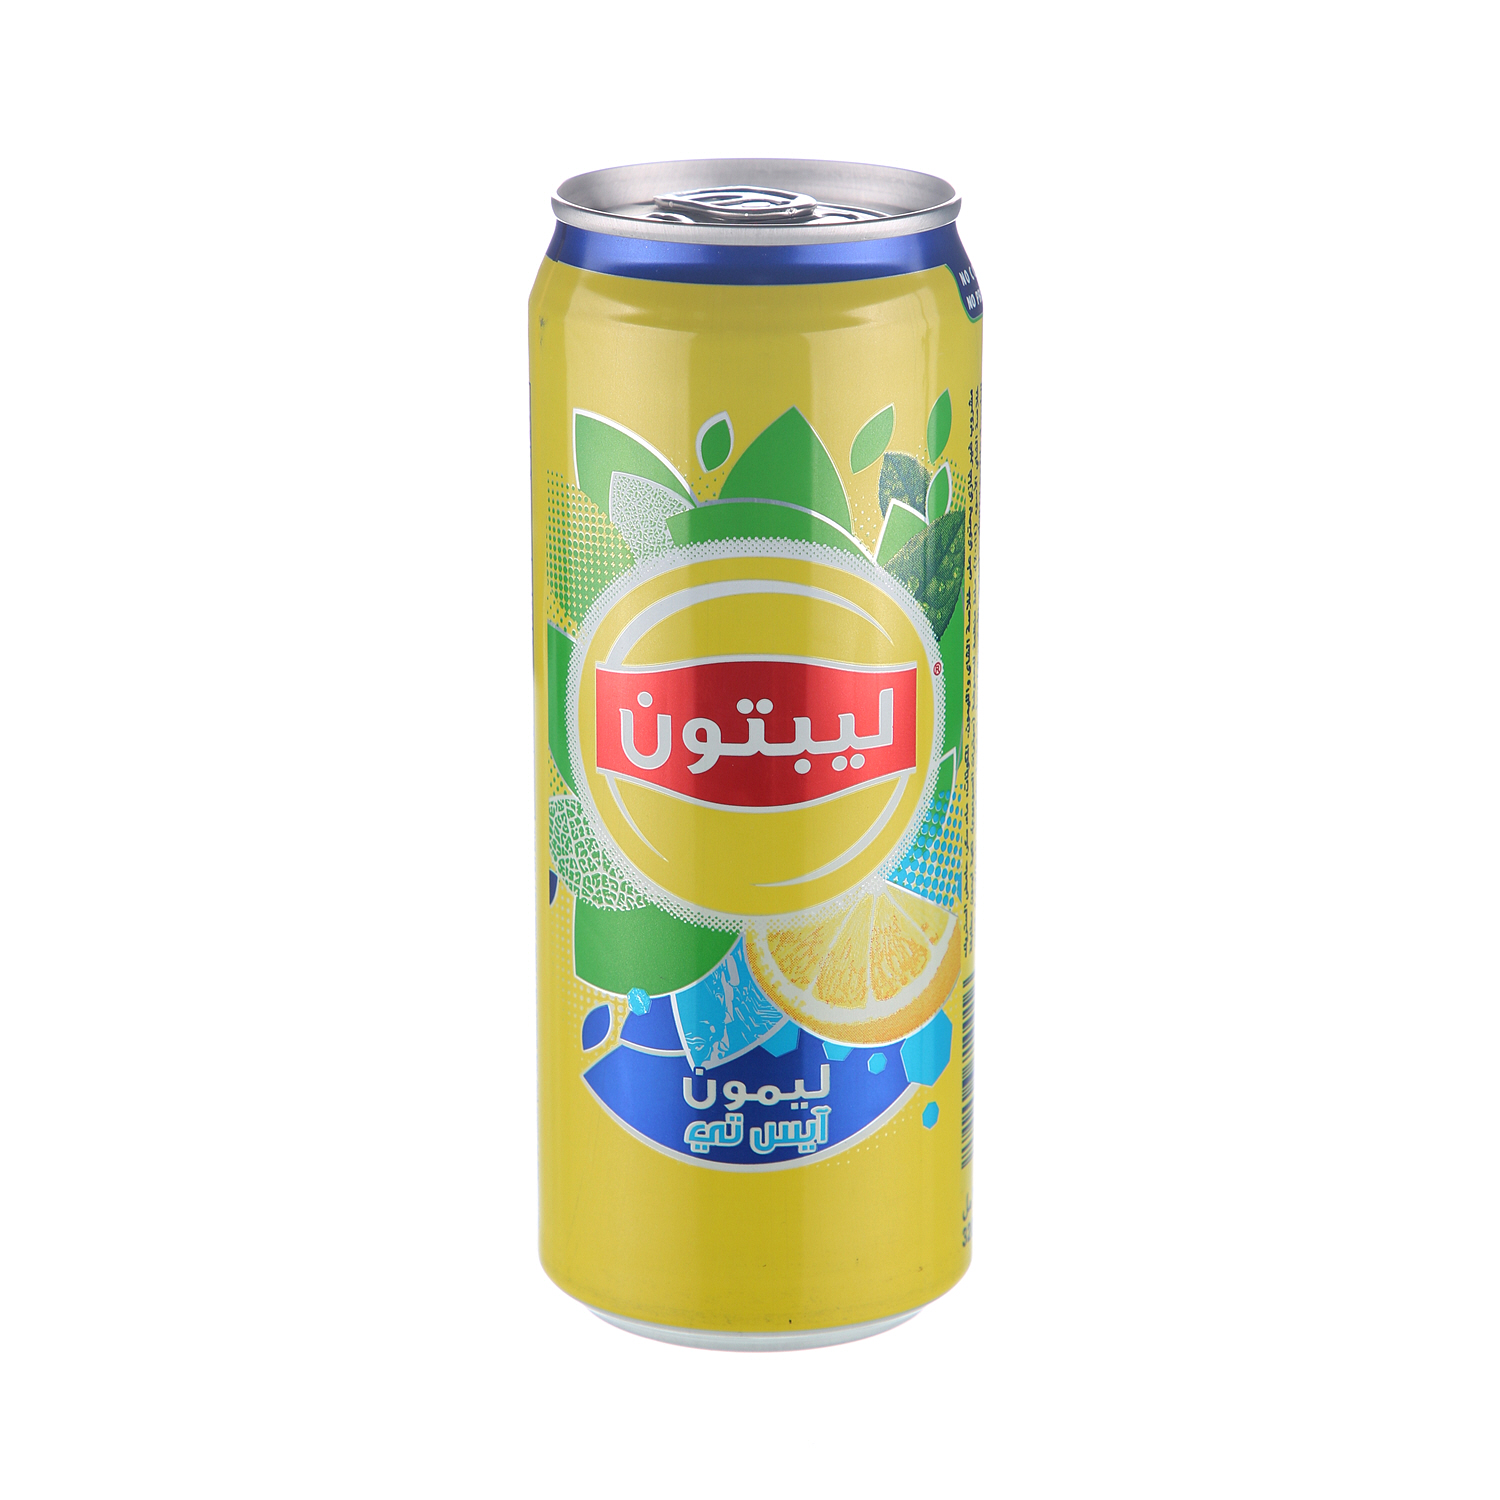 Lipton Ice Tea Lemon 320ml